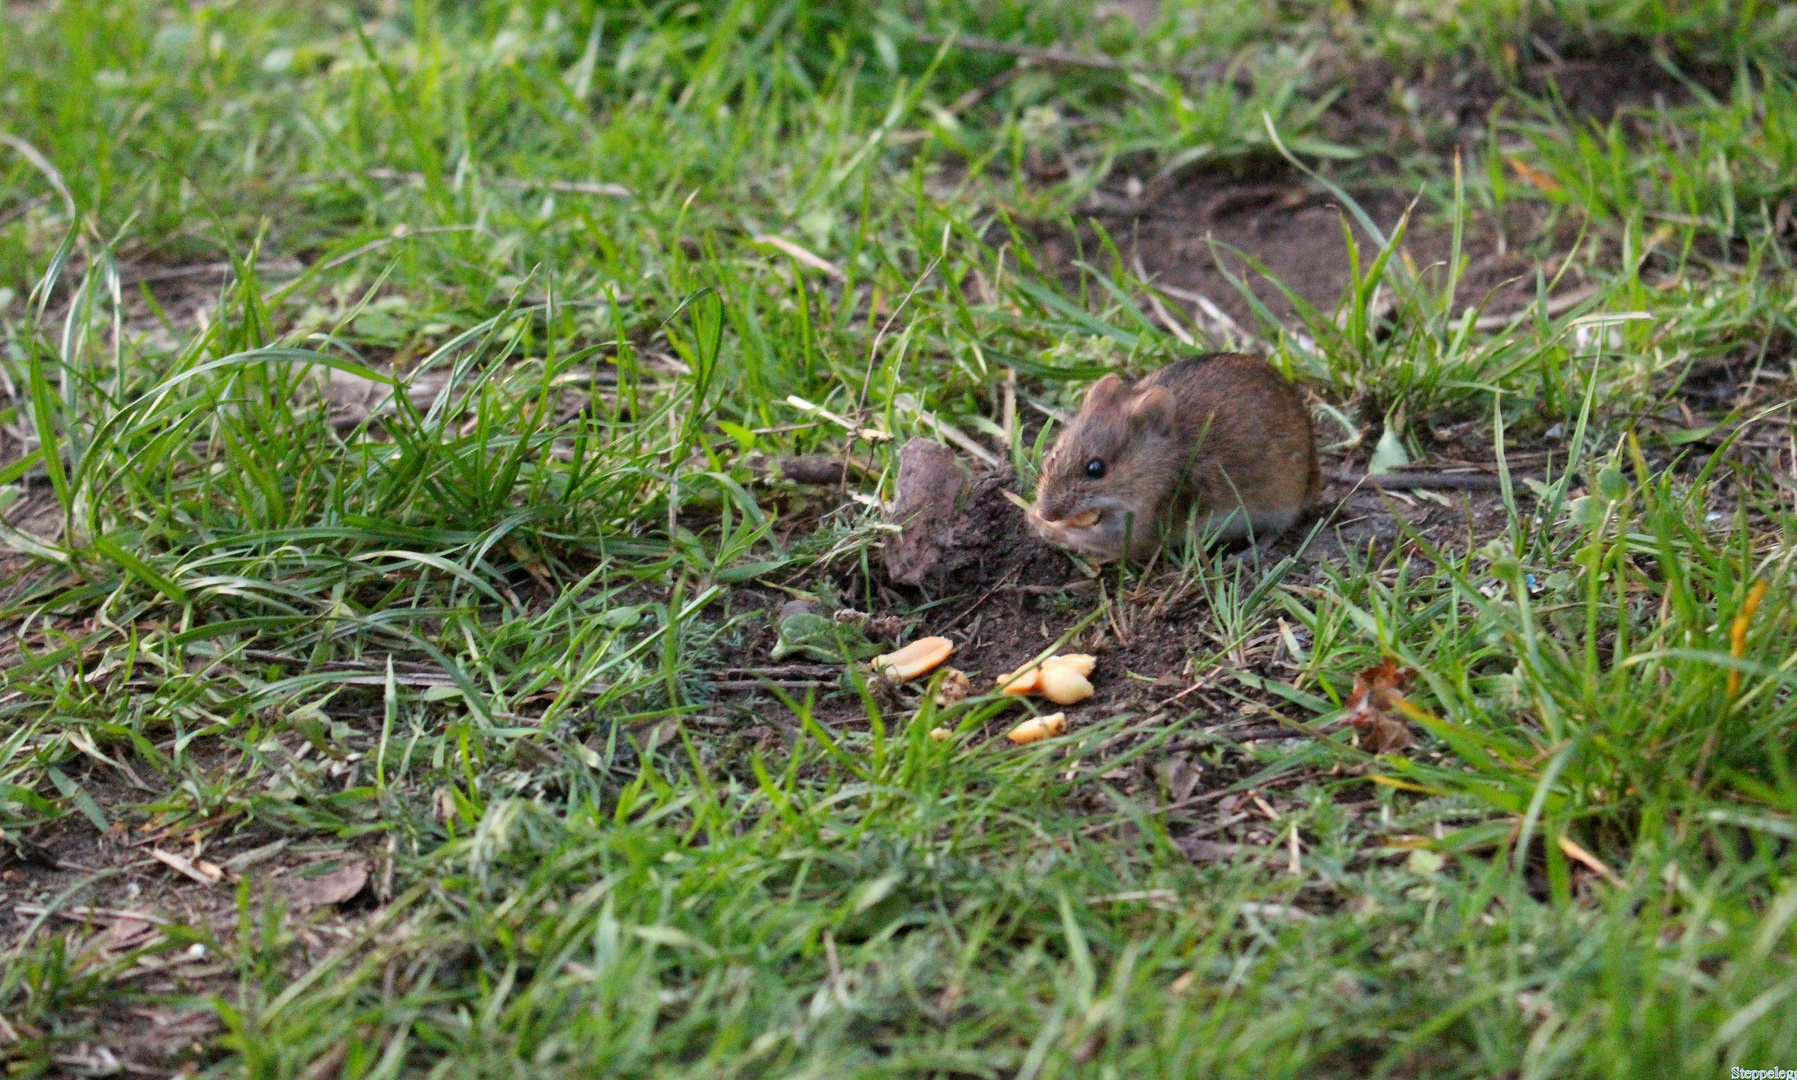 Maus im Gras beim Essen